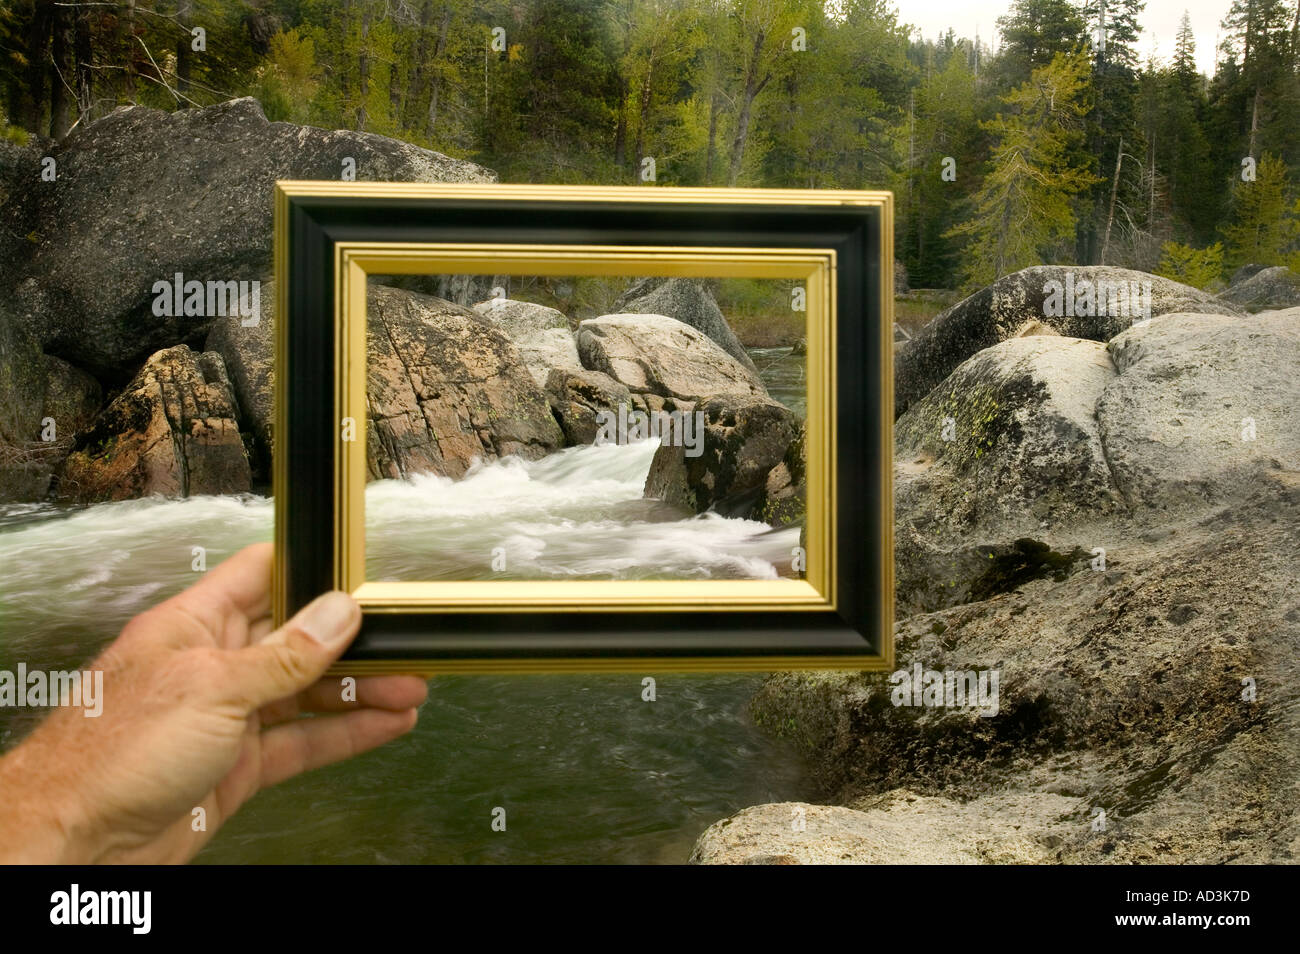 Vue de la rivière à travers un cadre photo Banque D'Images